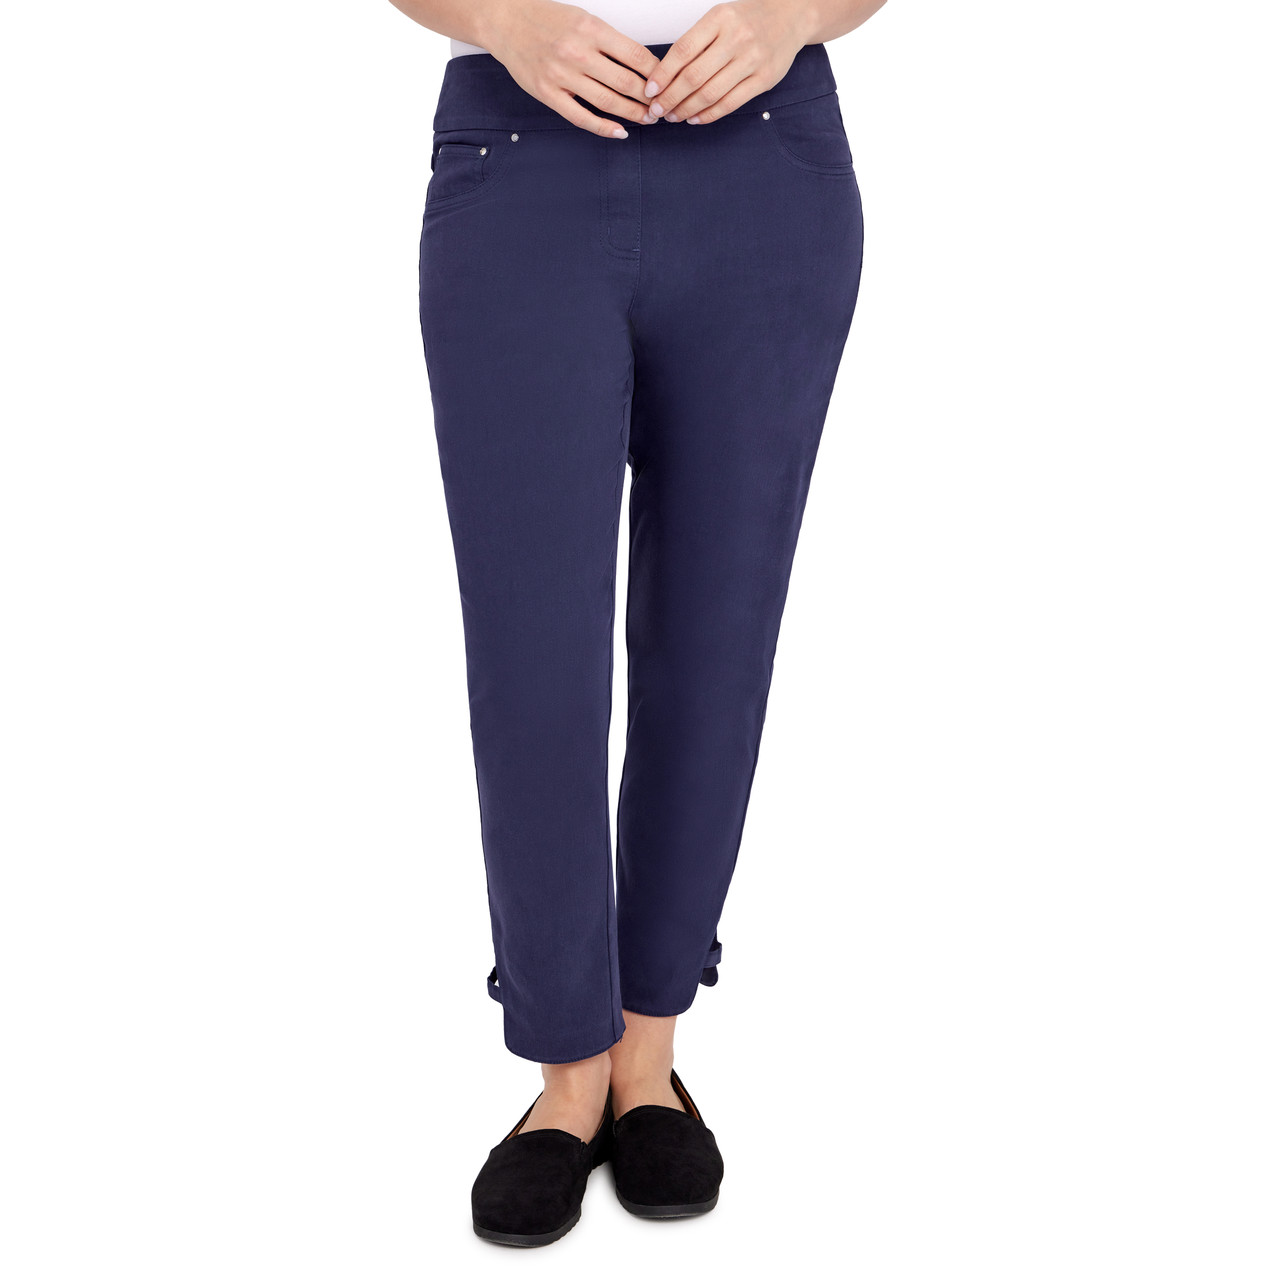 Women’s Full Elastic Waist Pull-On Jeans Pants in Denim